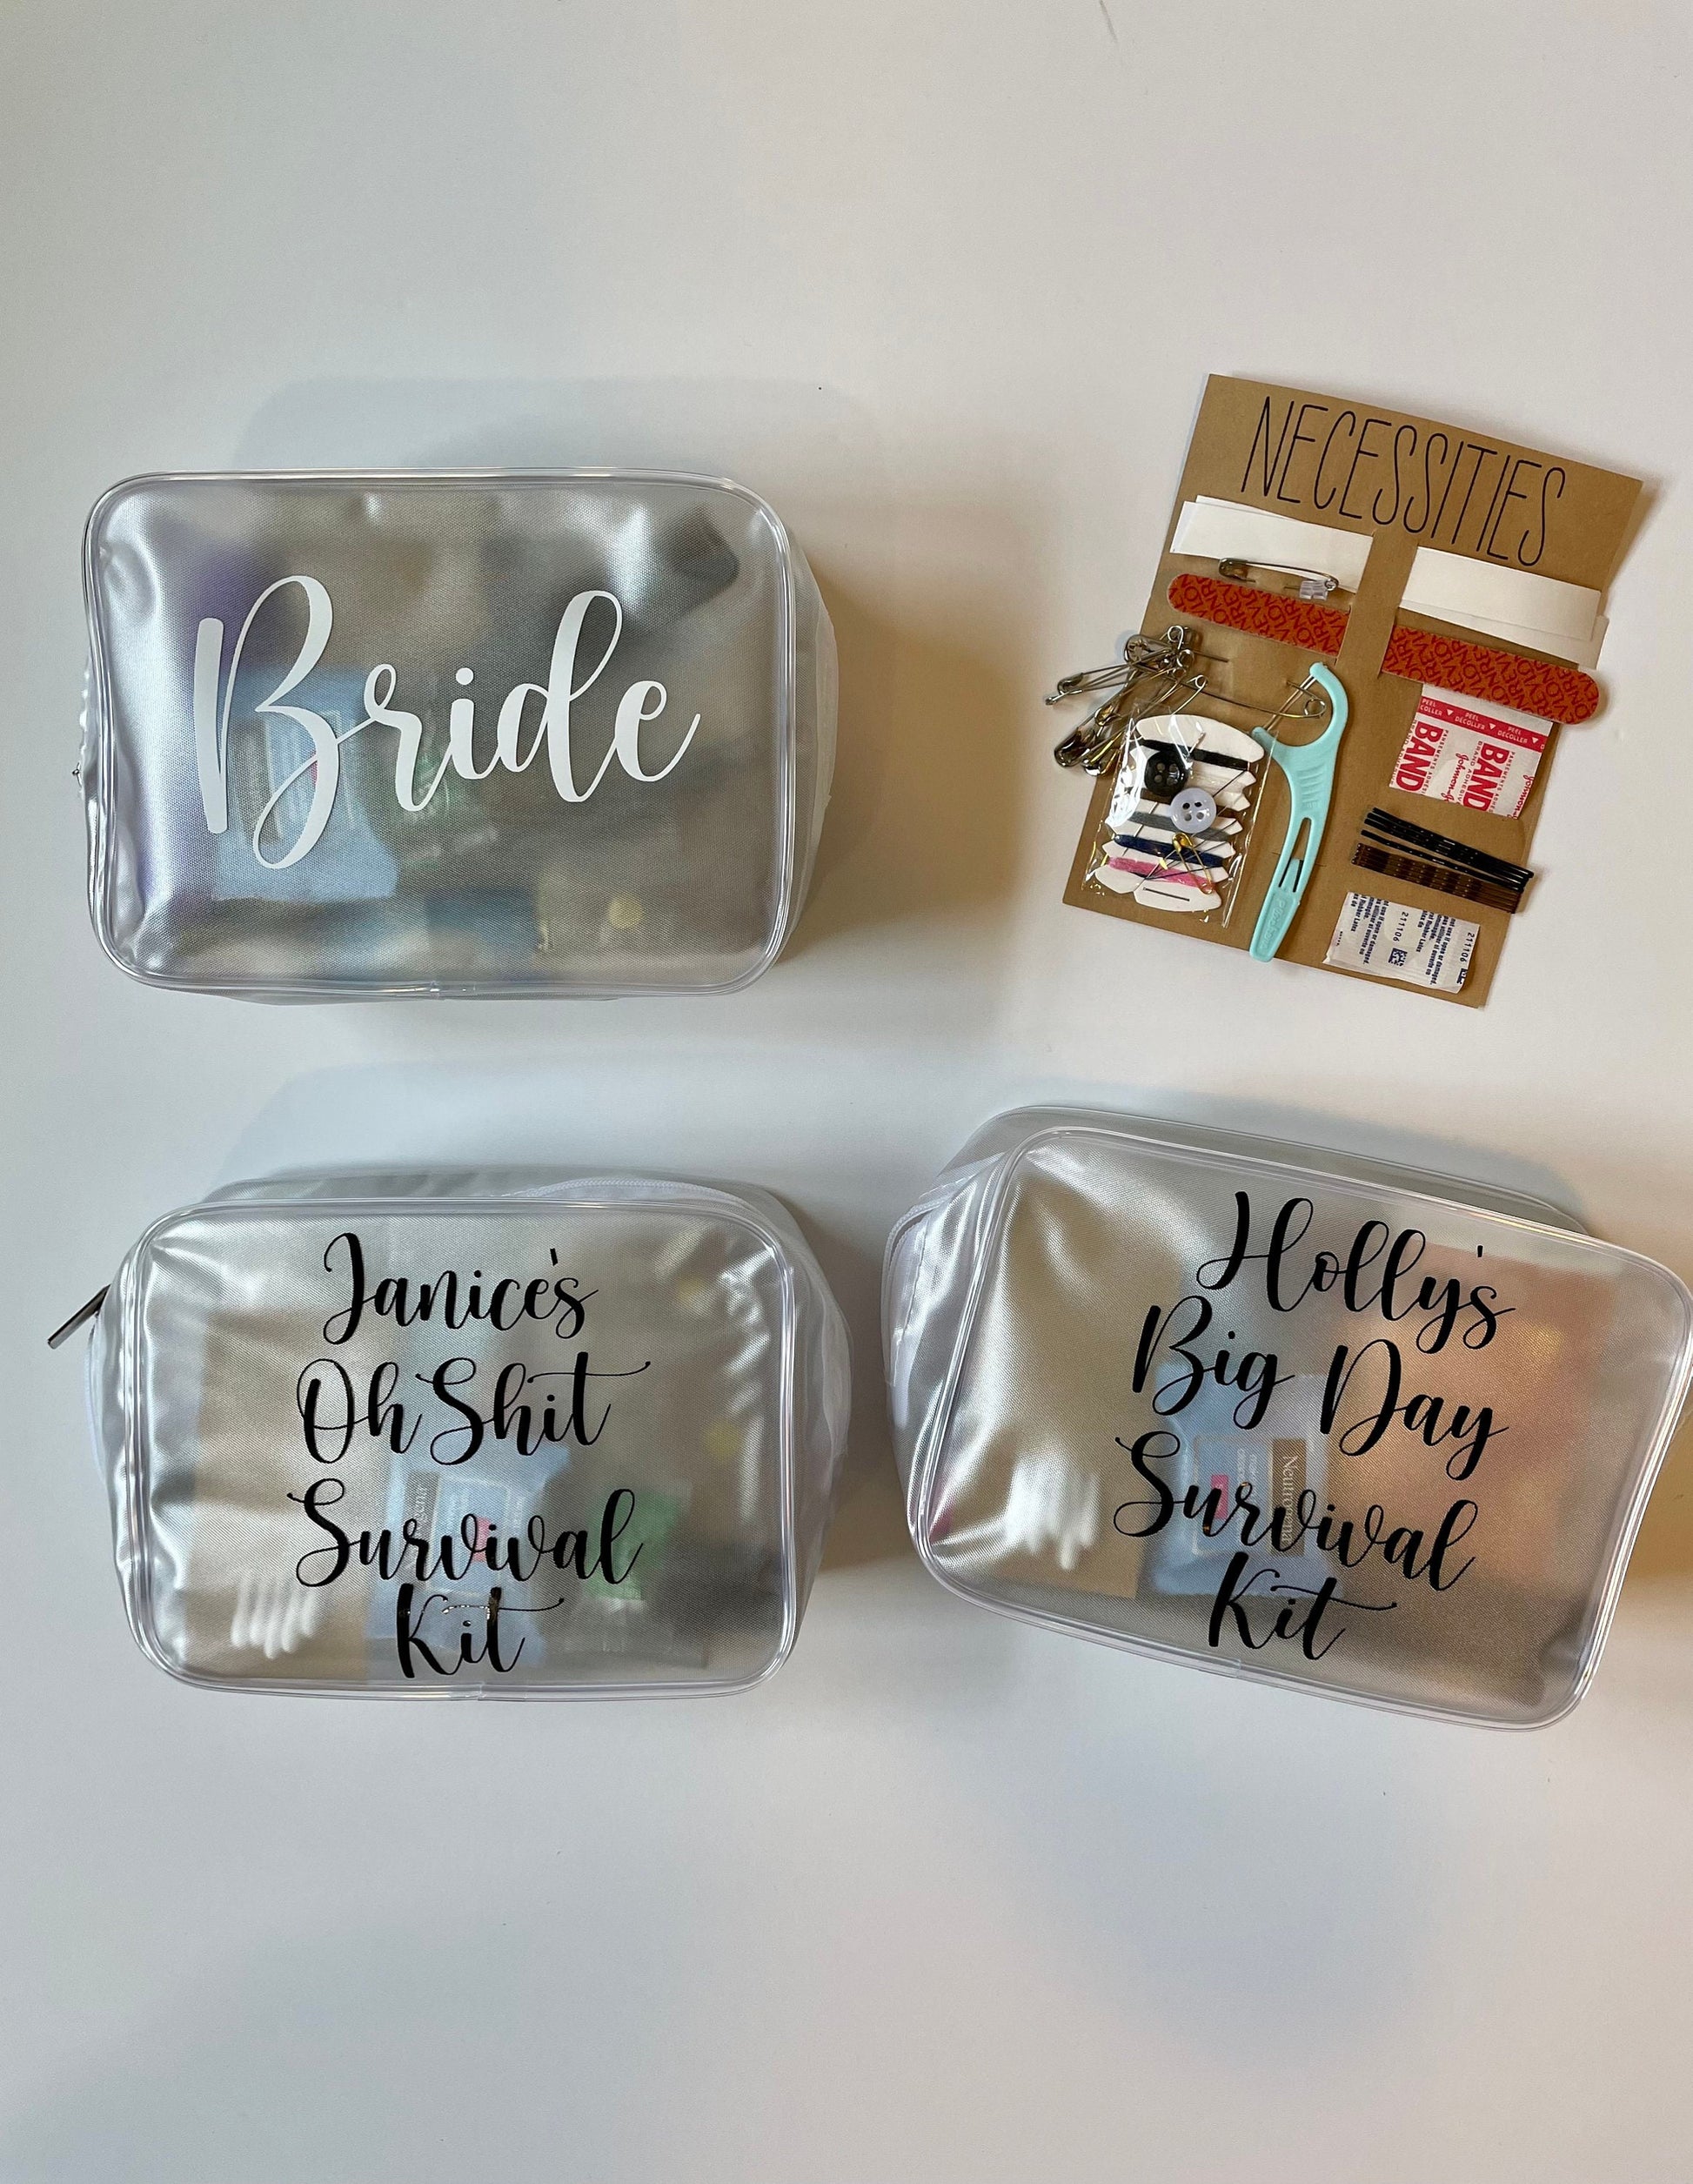 Wedding Day Emergency Kit Makeup bag Funny Bridal Shower Present